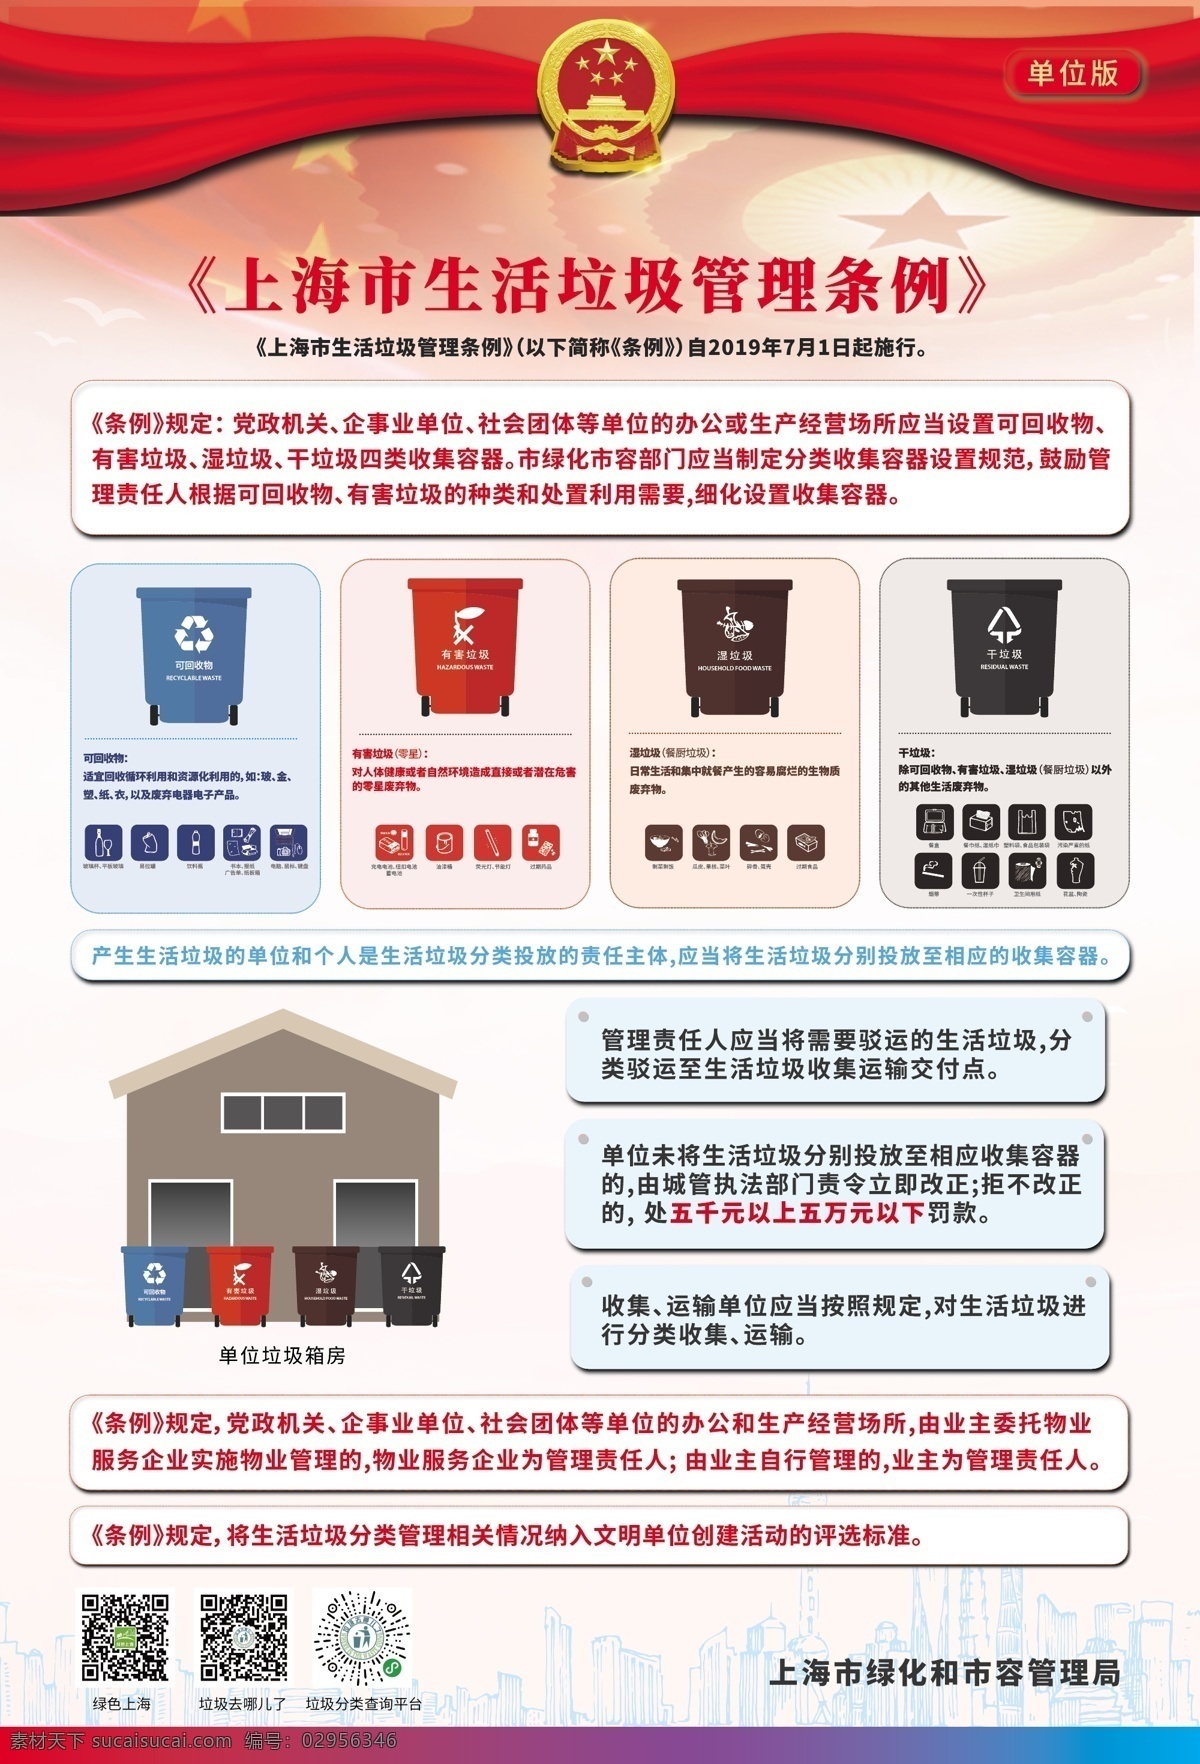 上海市 生活 垃圾 管理条例 海报 生活垃圾管理 垃圾分类海报 生活垃圾 垃圾分类 环保海报 公益海报